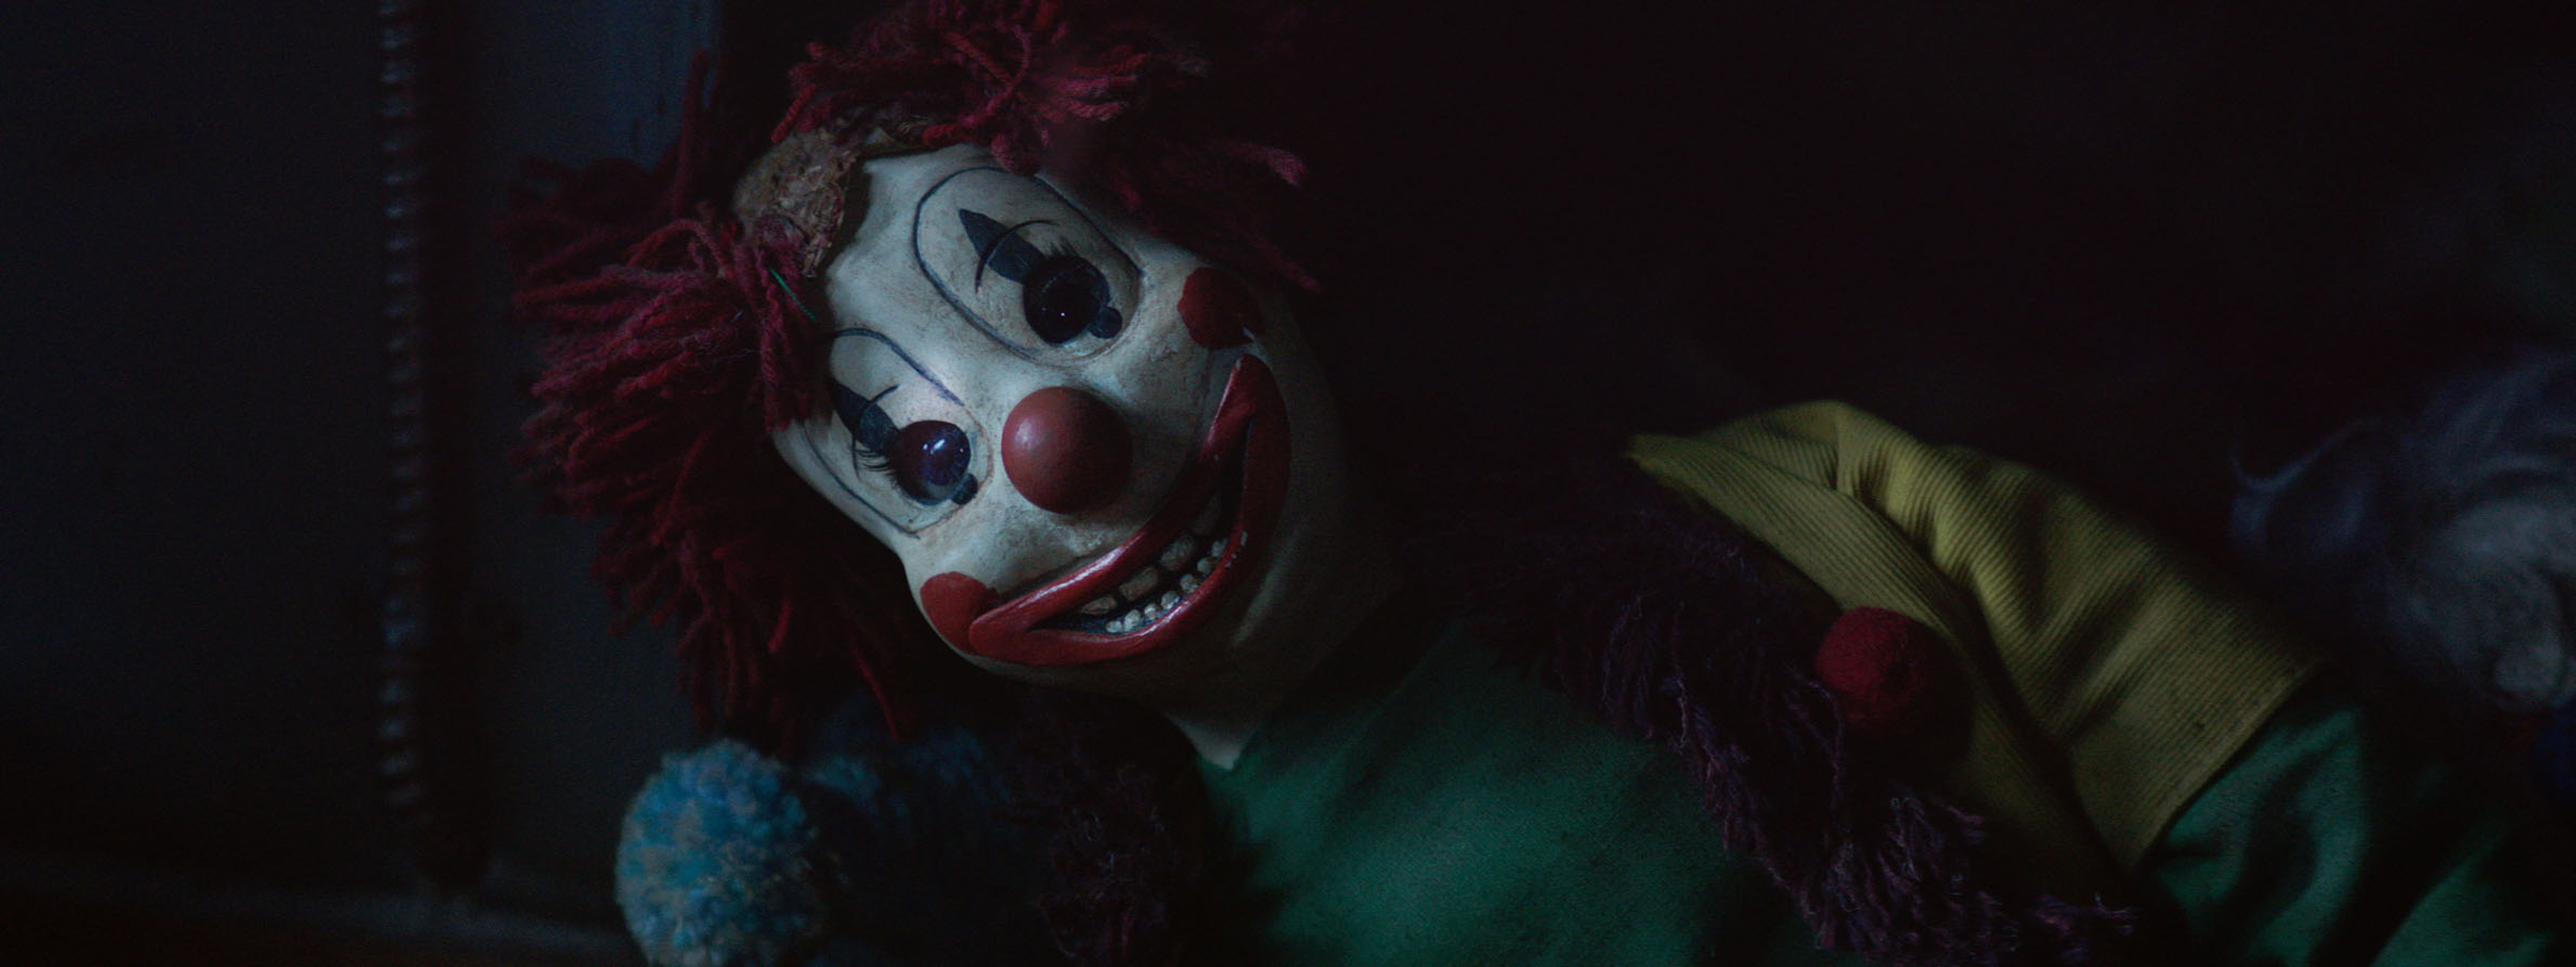 Llega el terror a la pantalla de AMC con una nueva edición de “Fear Fest”